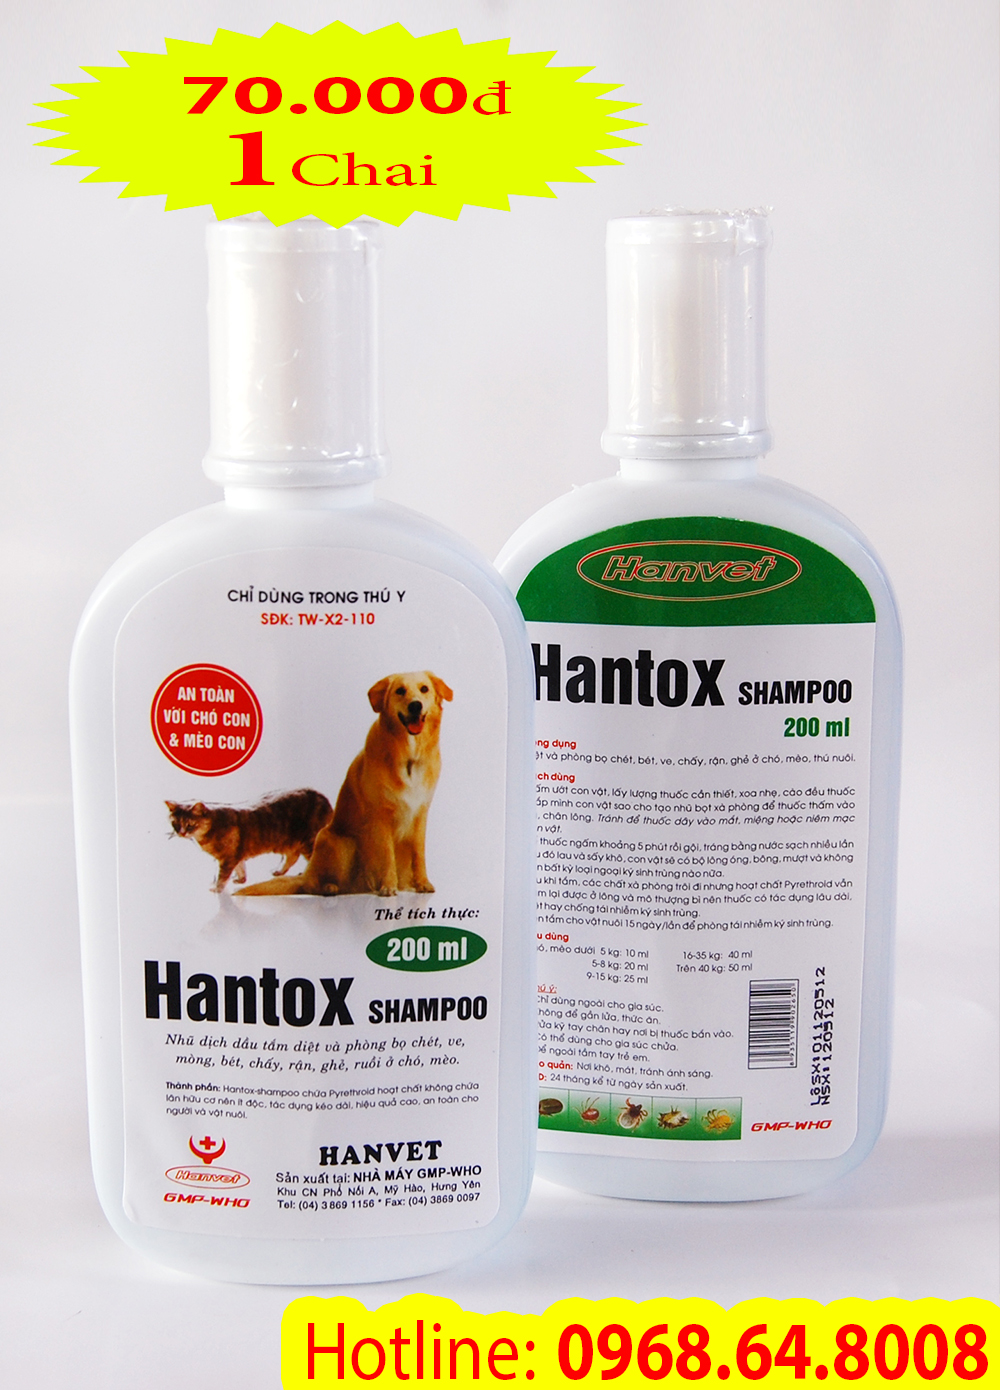 Hantox Shampoo (200ml) - Chai nhũ bạc ( SX tại VIỆT NAM) - Sữa tắm diệt côn trùng, ve rận, bọ chét cho chó mèo...